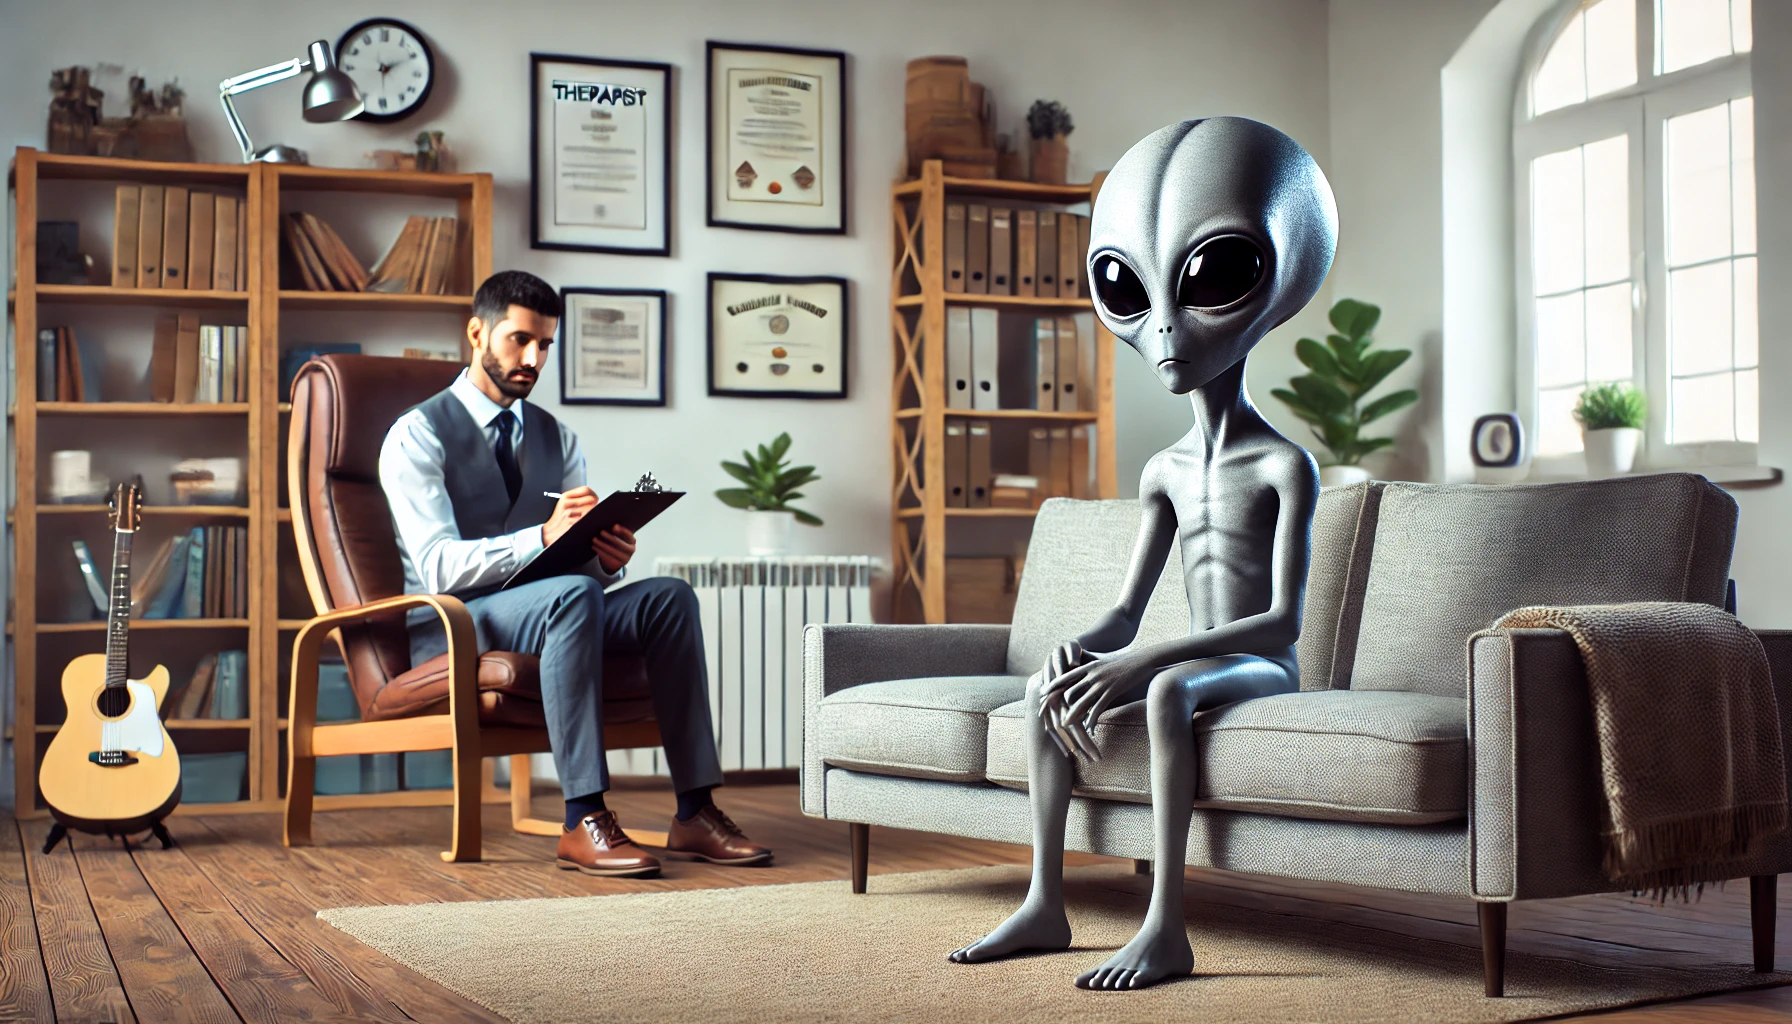 Alieni e psicologia: credere agli extraterrestri è da pazzi?